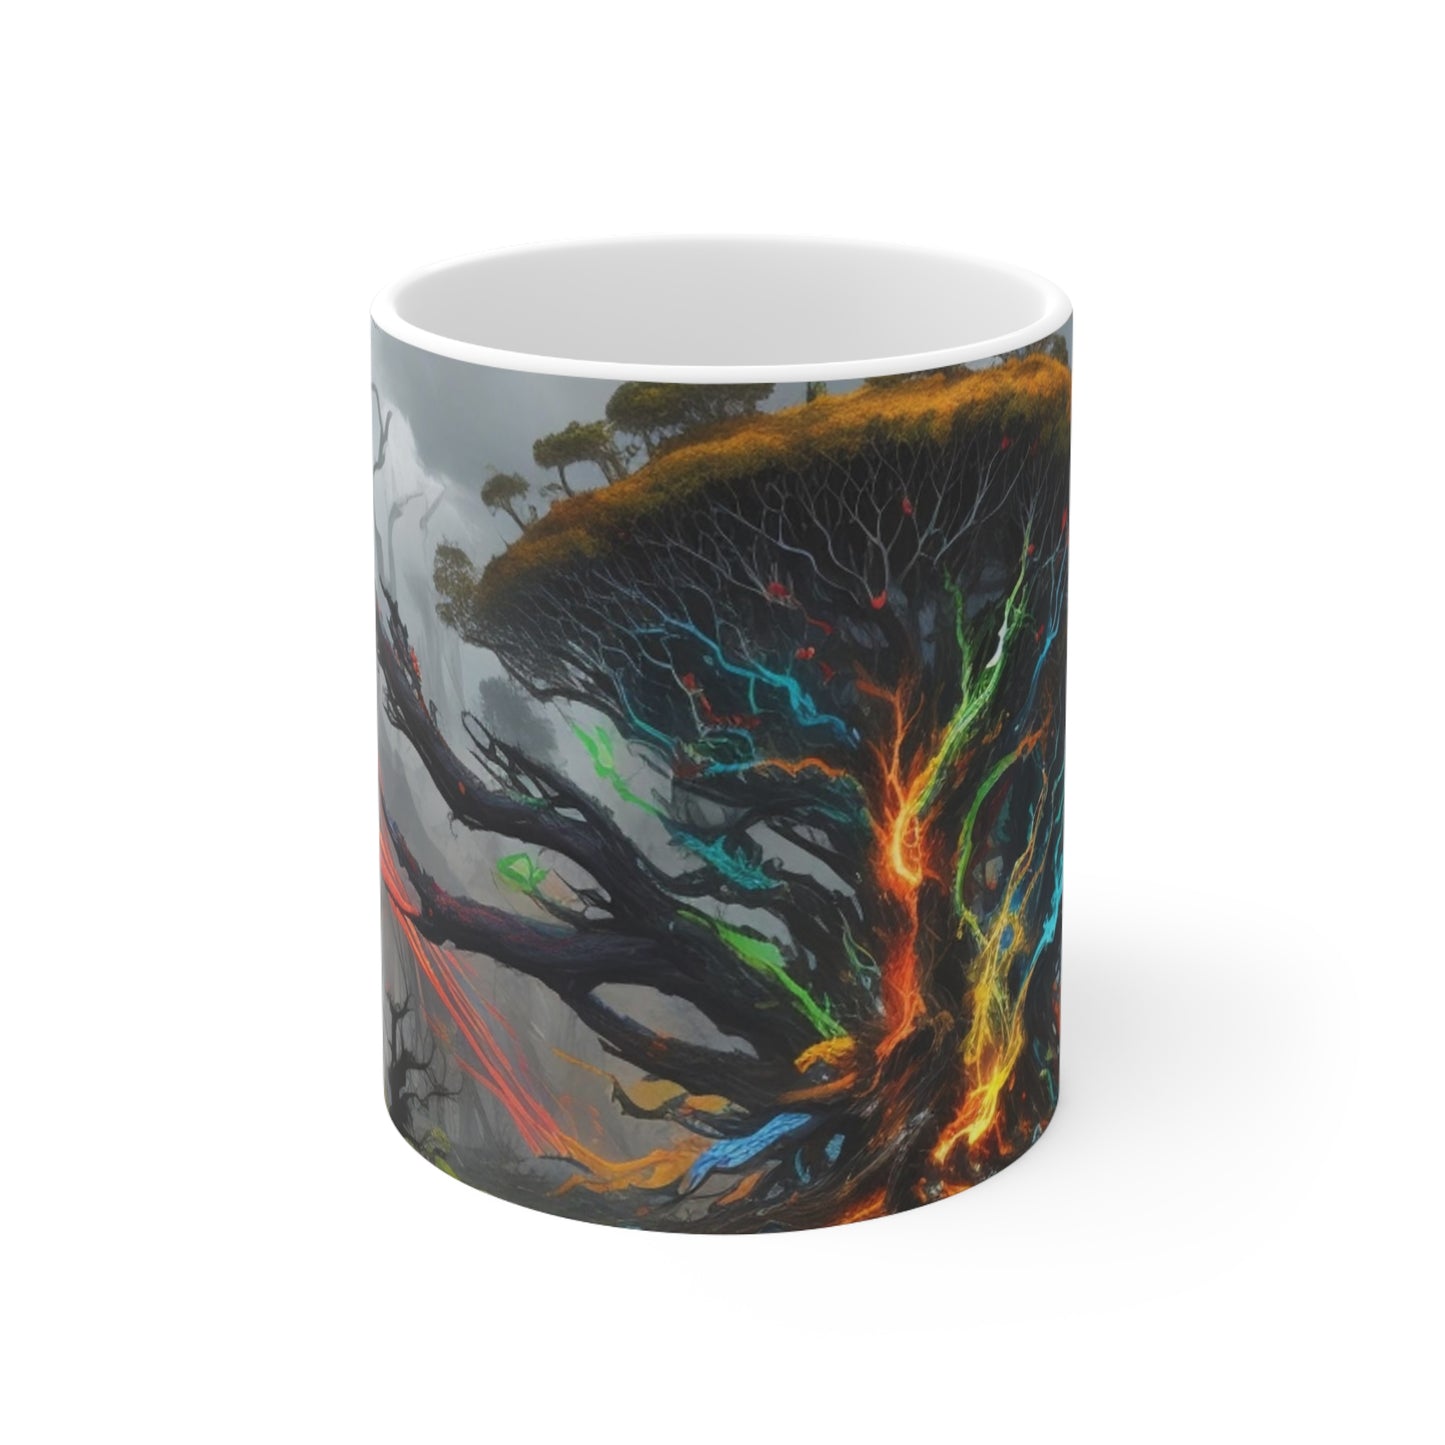 Messy Colourful Trees - Ceramic Coffee Mug 11oz